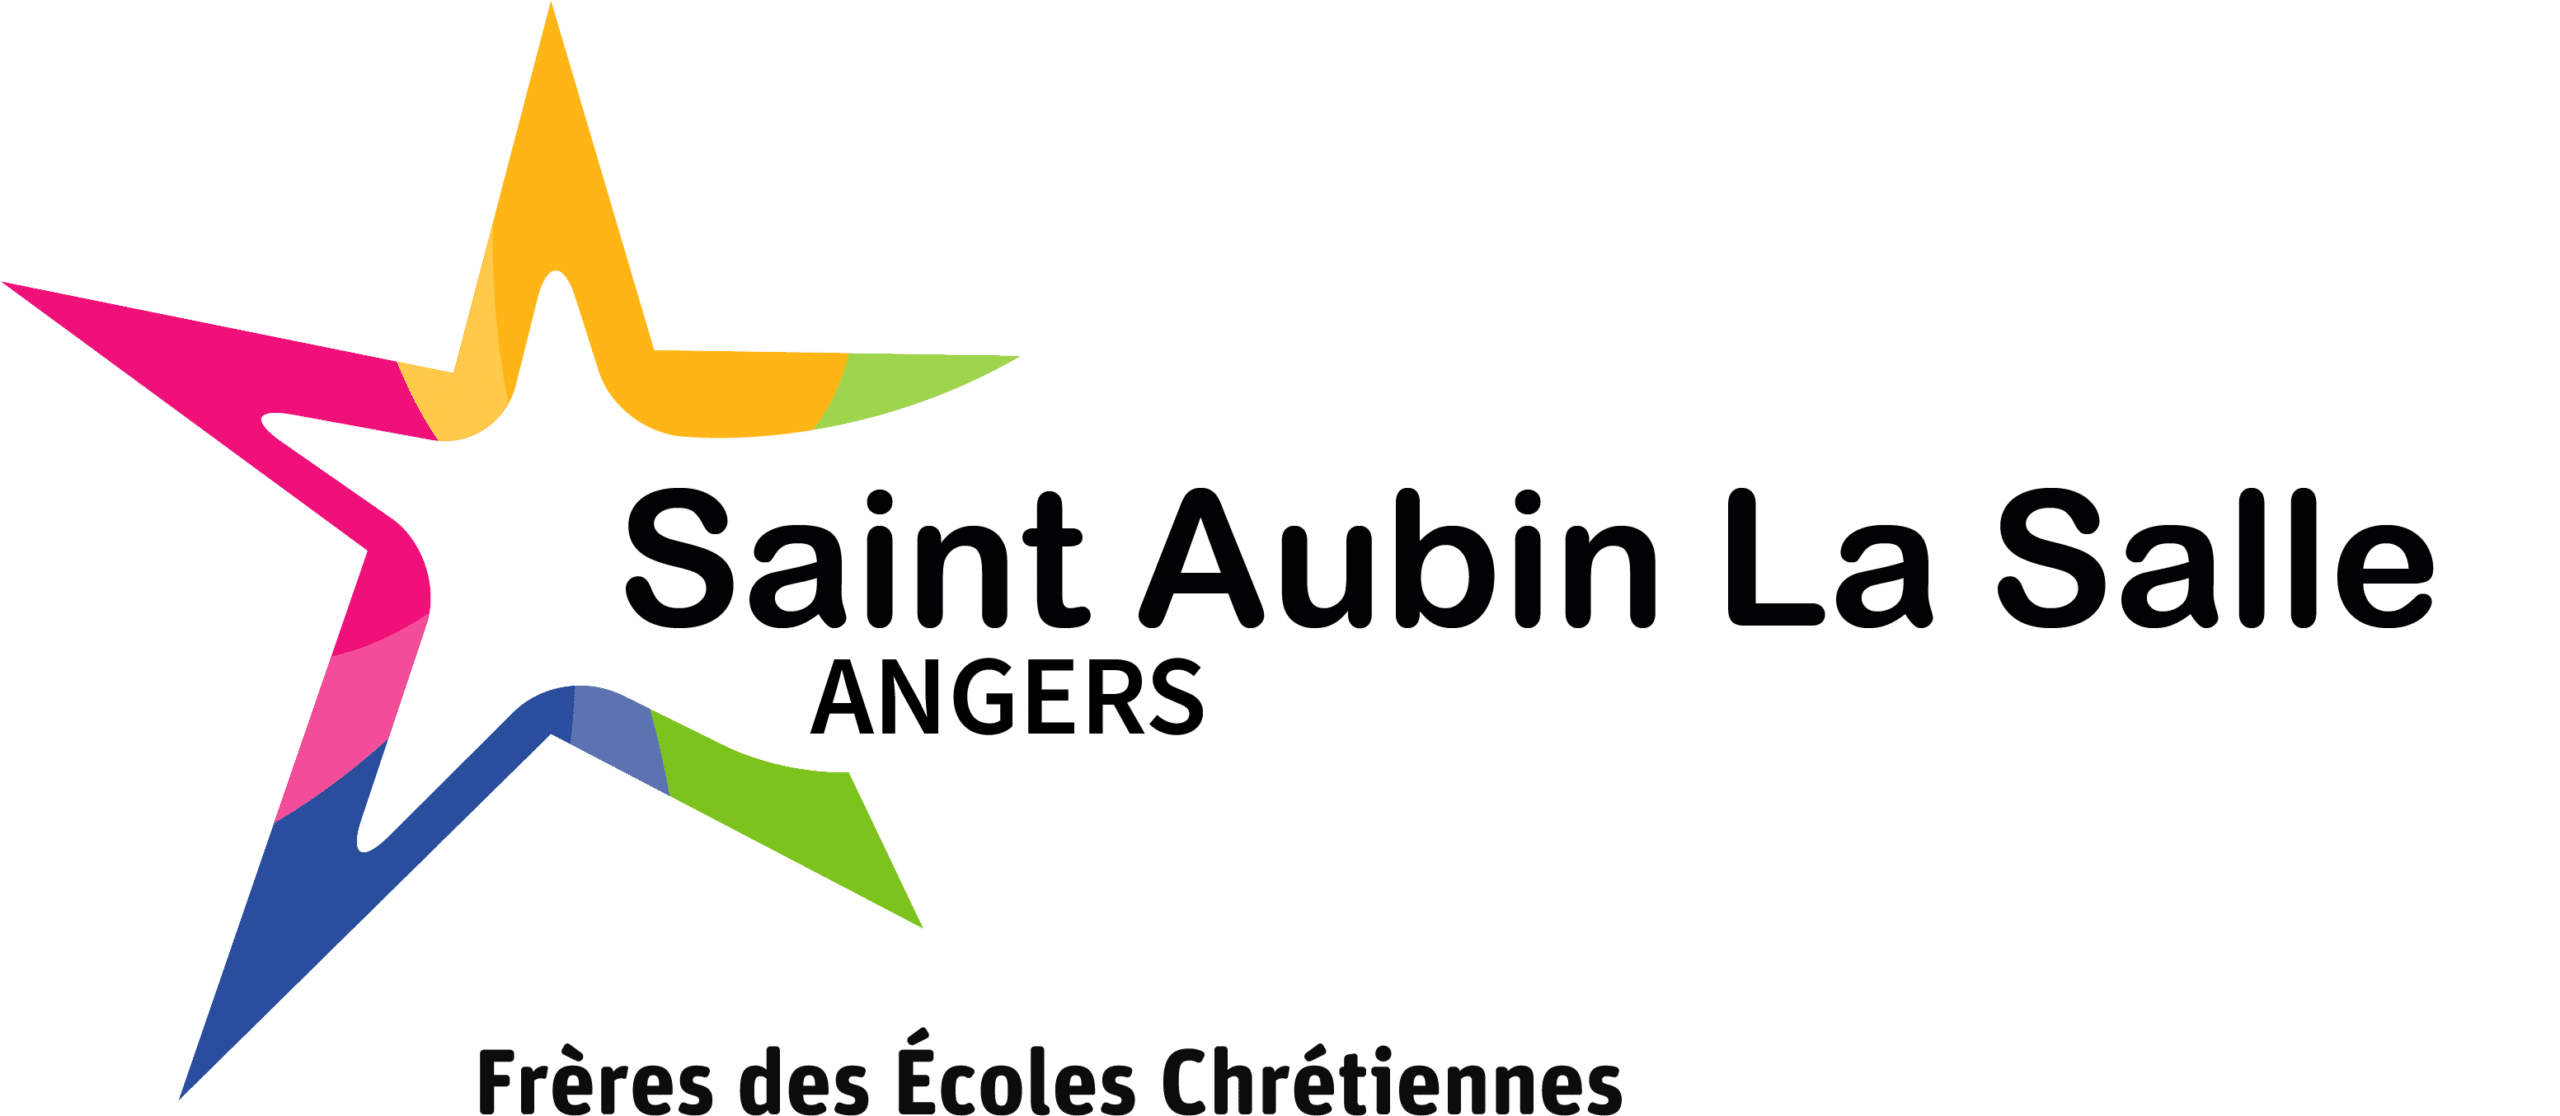 Saint Aubin La Salle